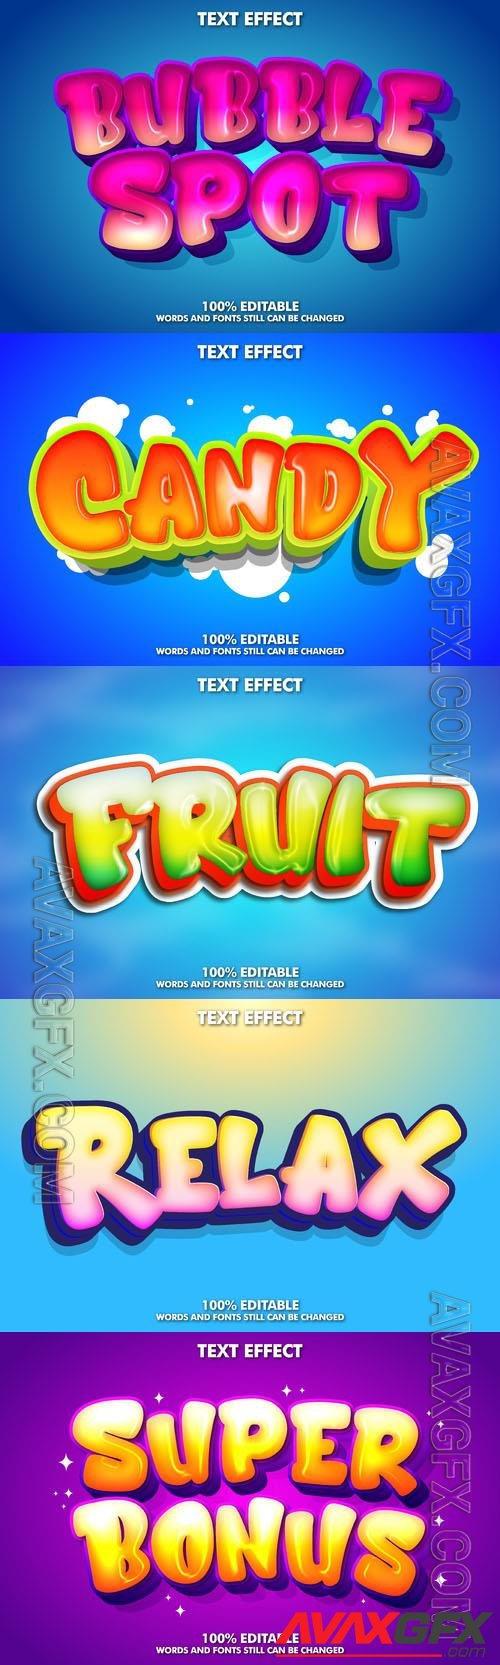 Vector 3d text editable, text effect font design  vol 96 [EPS]